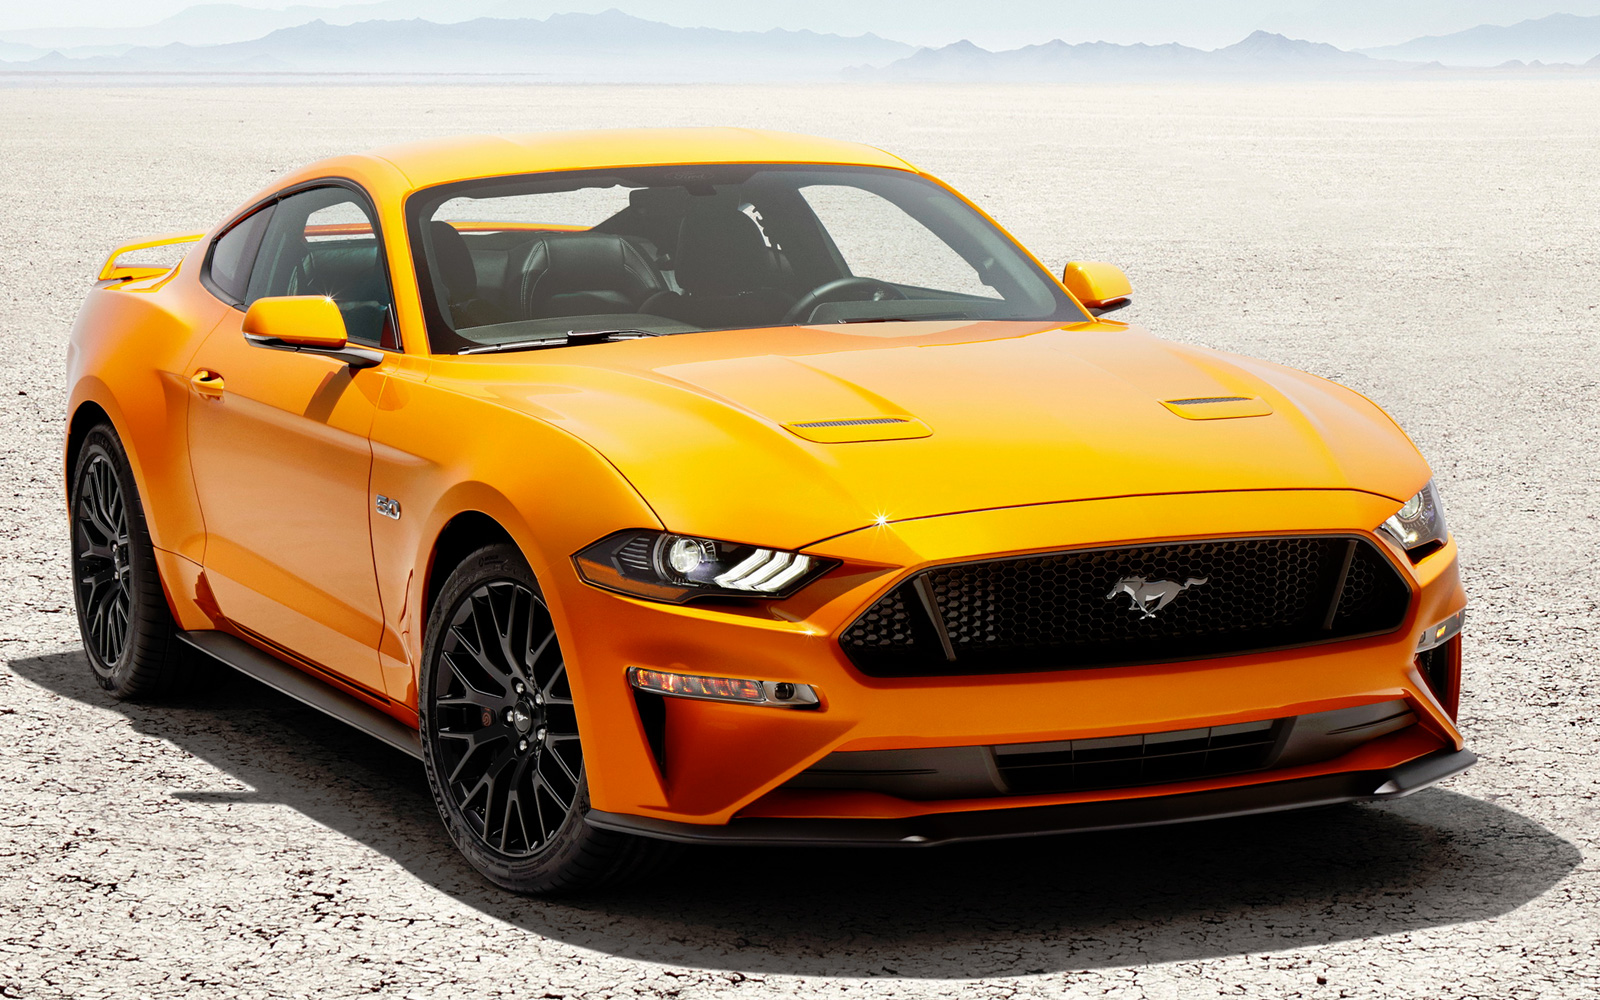 Посмотрите, как будет выглядеть новый Ford Mustang седьмого поколения